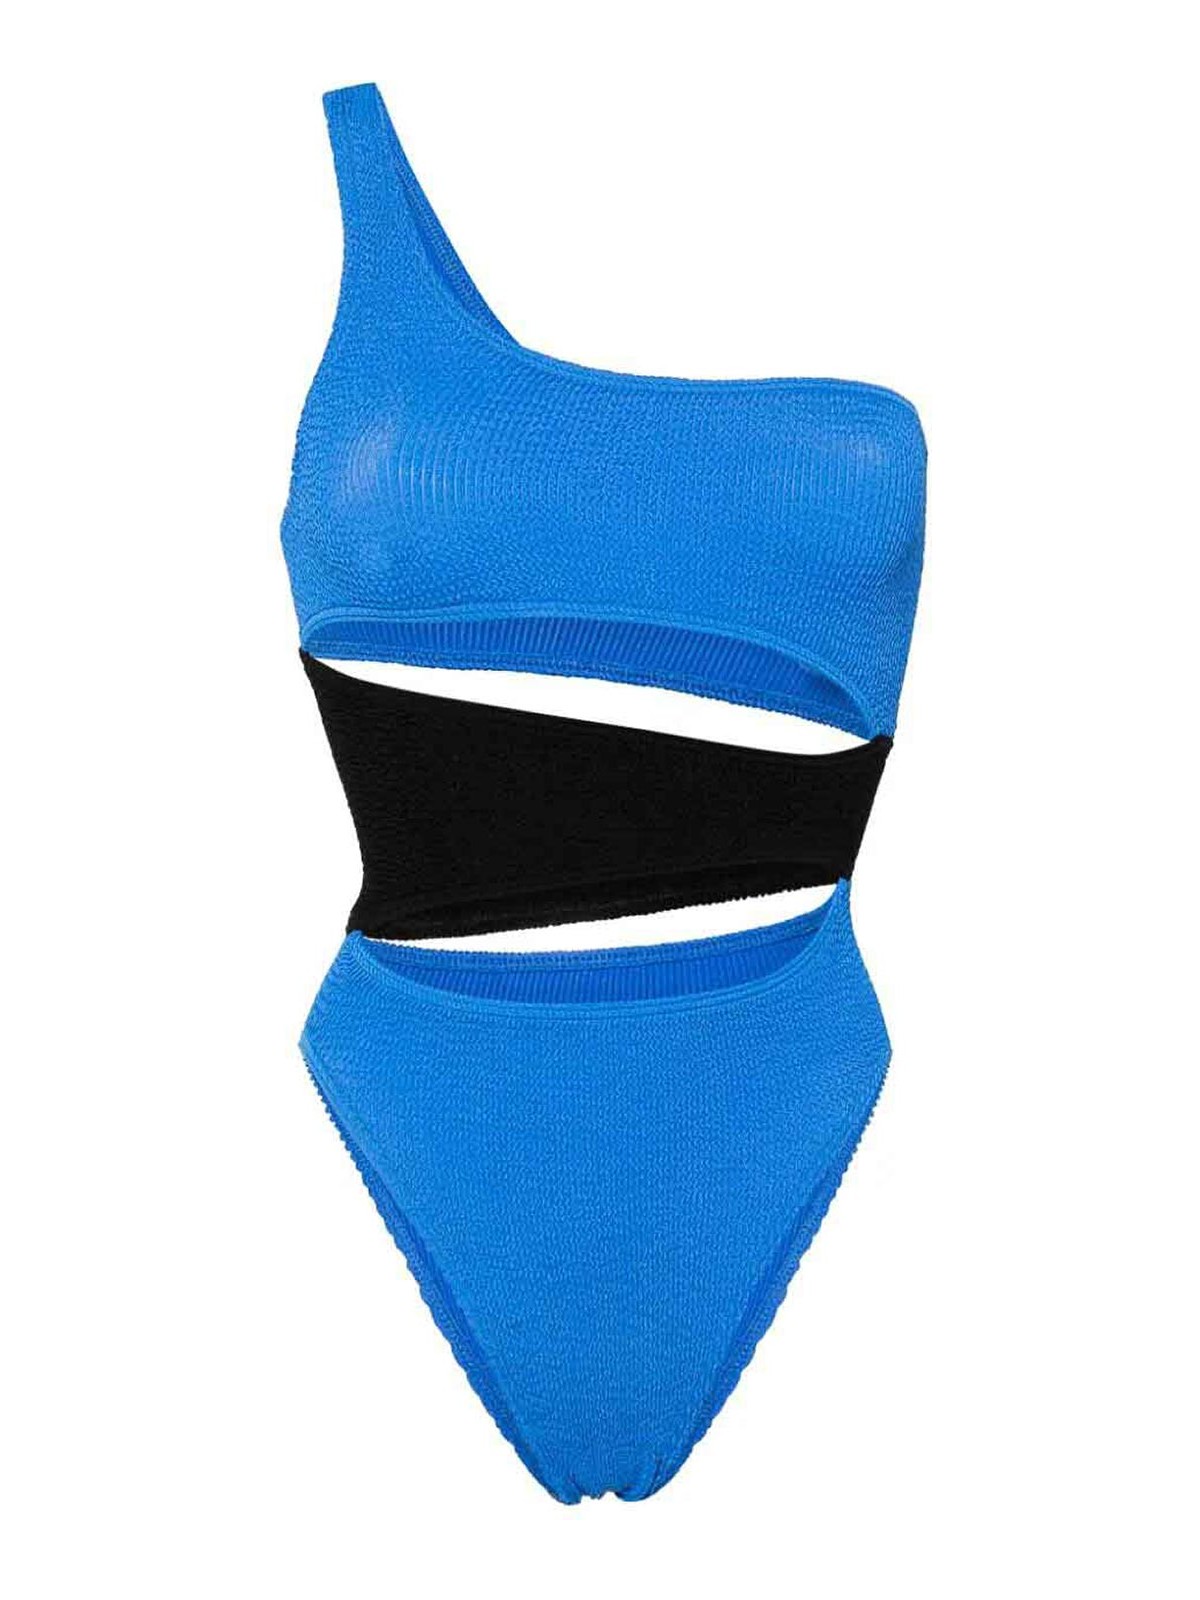 Bondeye Cut Out Swim Suit In Blue